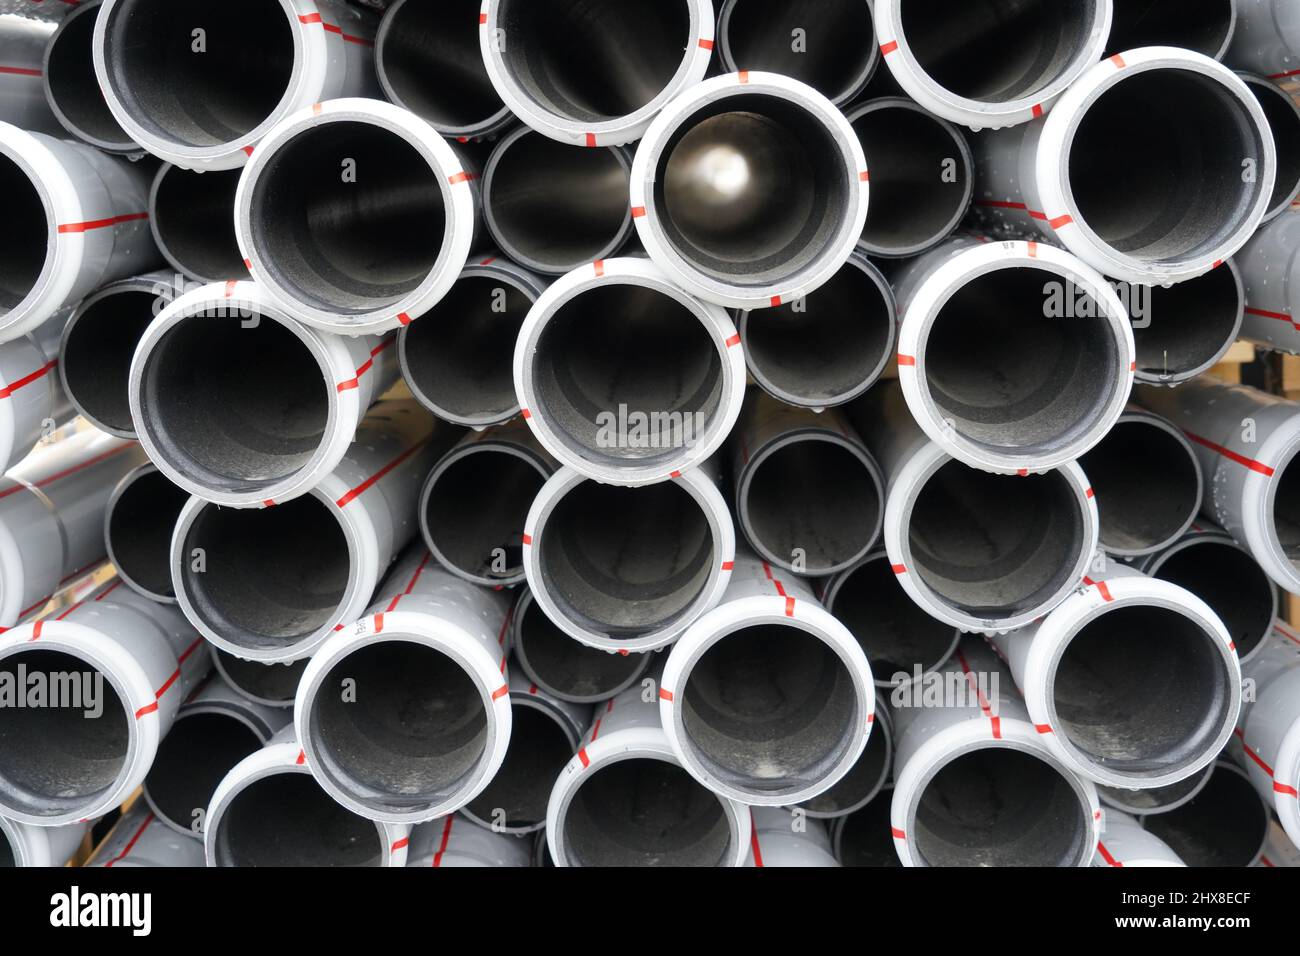 Tuyaux, tubes ou pipelines en plastique en coupe transversale comme arrière-plan stockés dans un faisceau. Ils sont fabriqués dans un matériau durable et sont utilisés dans la construction. Banque D'Images